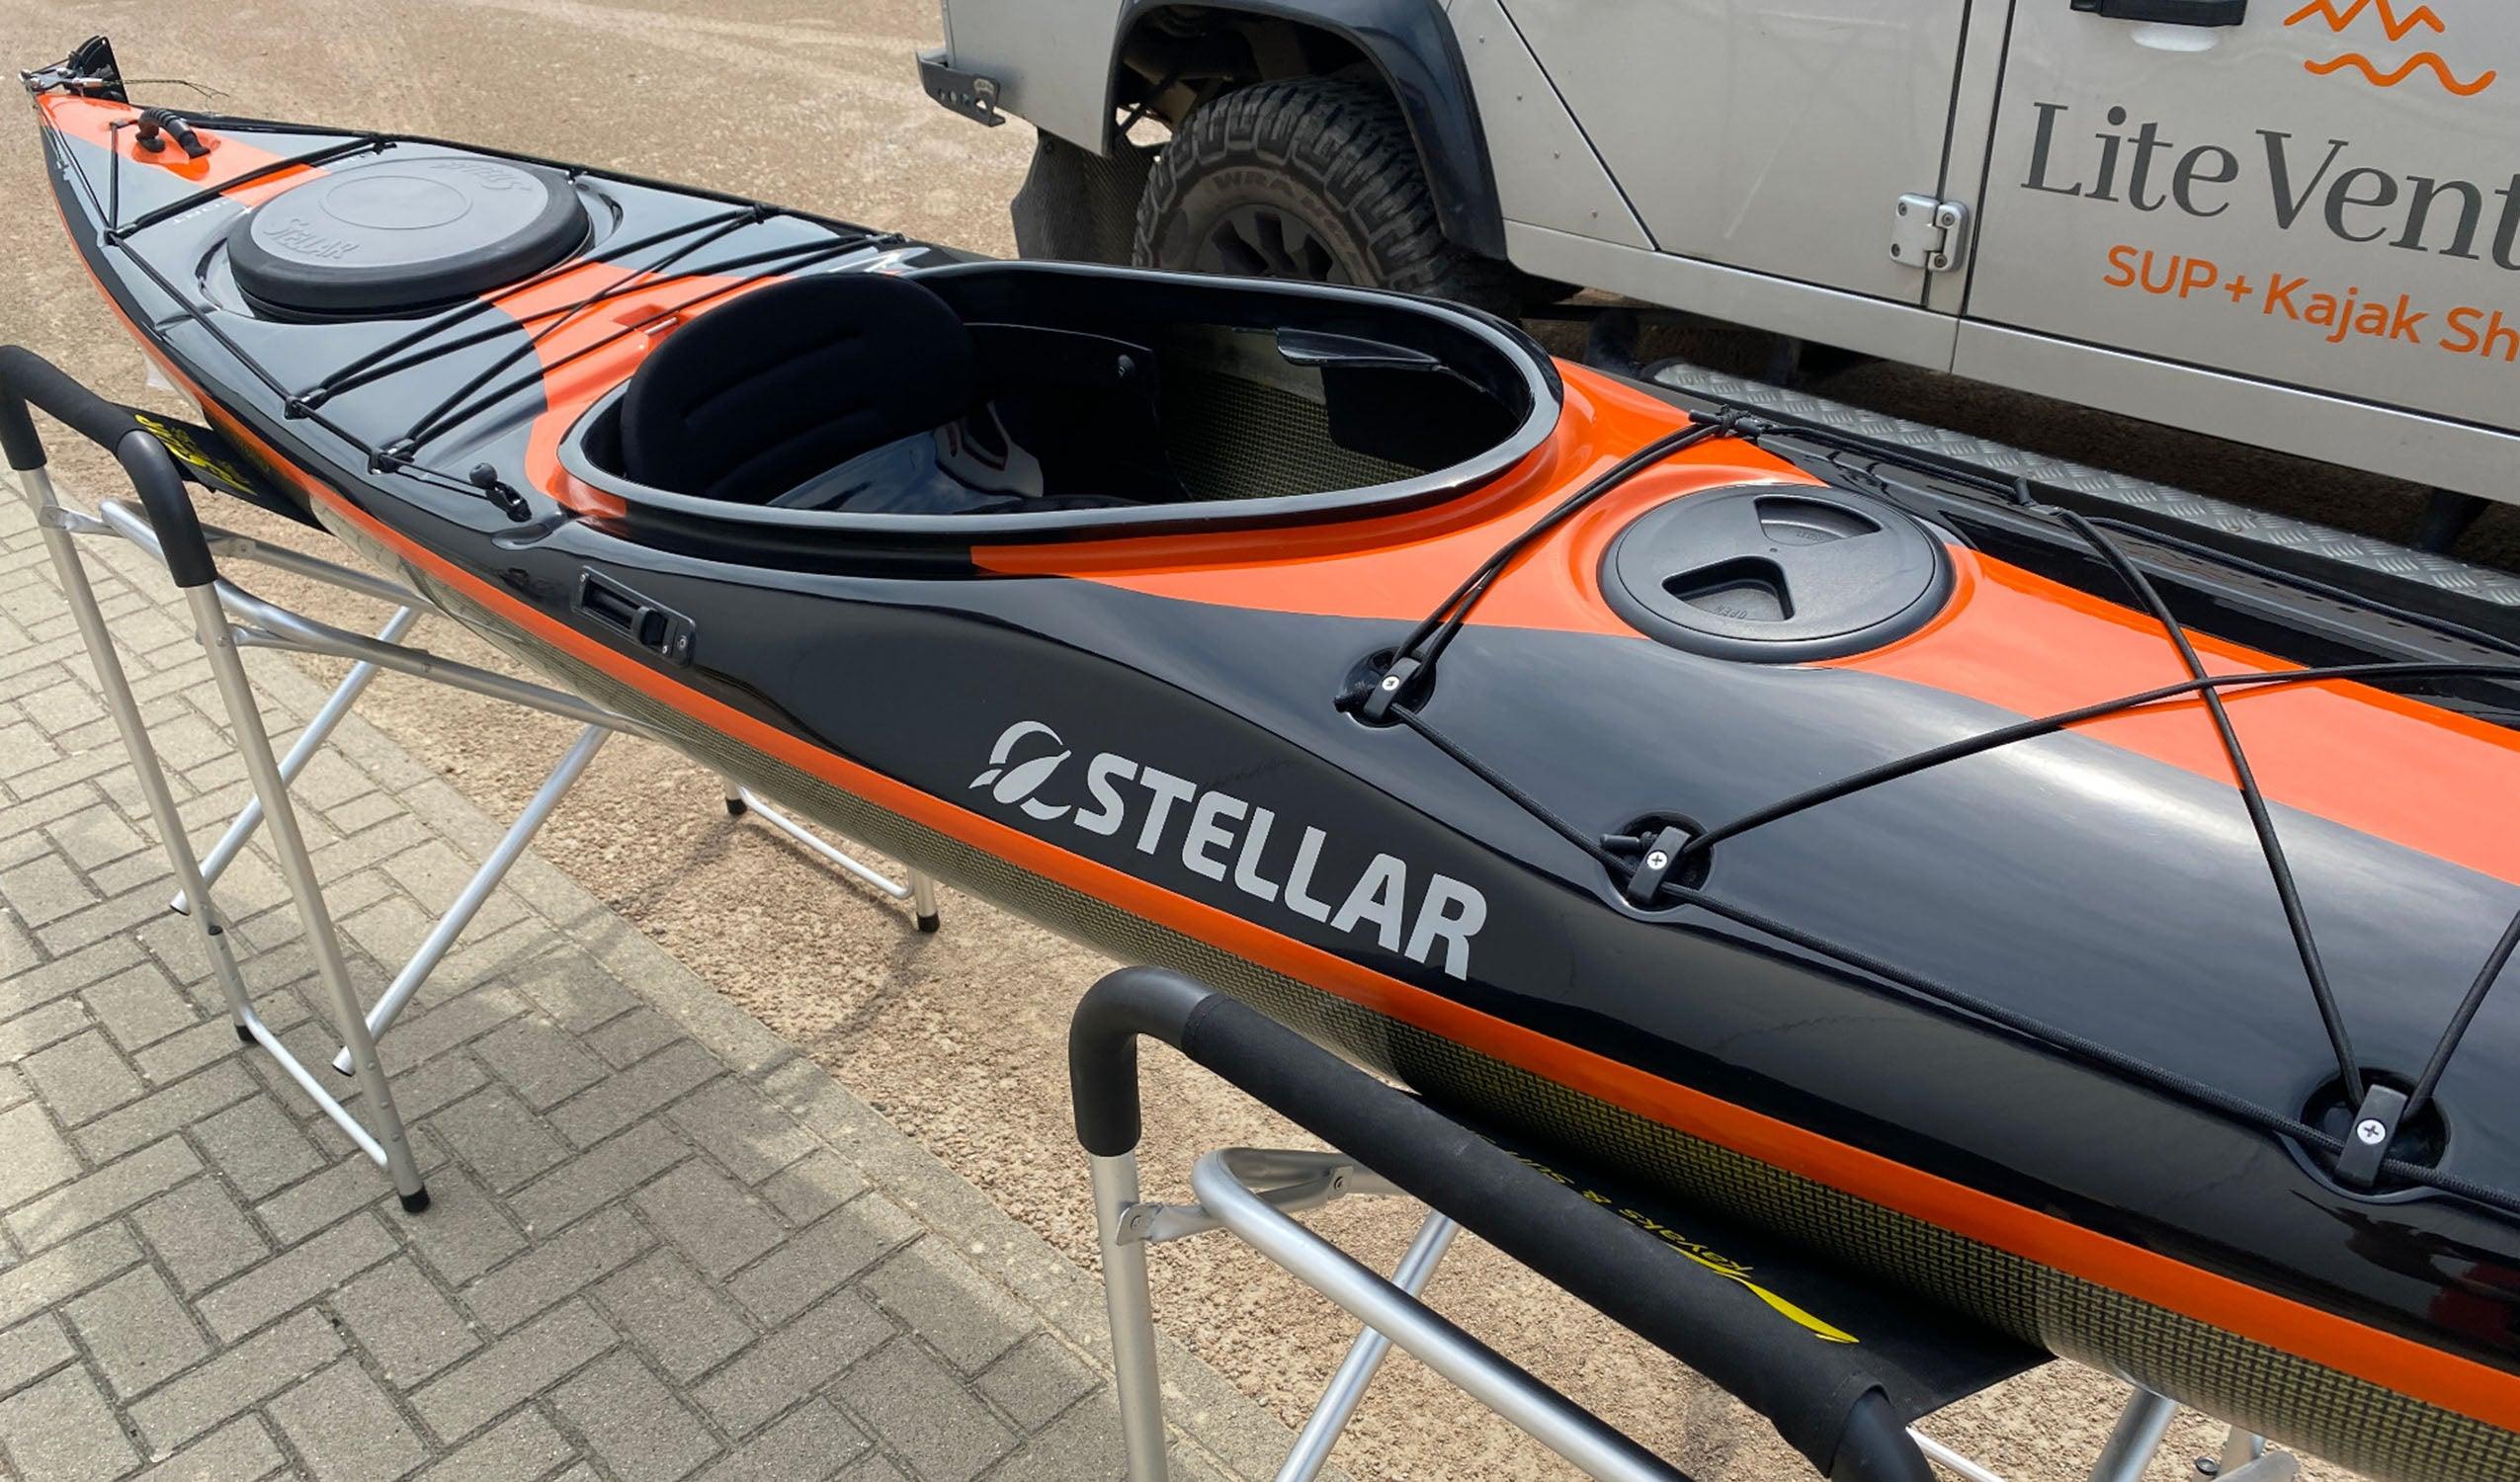 Produktbild von Kajak " S14 G2 Multisport-schwarz orange " der Marke STELLAR Lightweight für 3310.00 €. Erhältlich online bei Lite Venture ( www.liteventure.de )